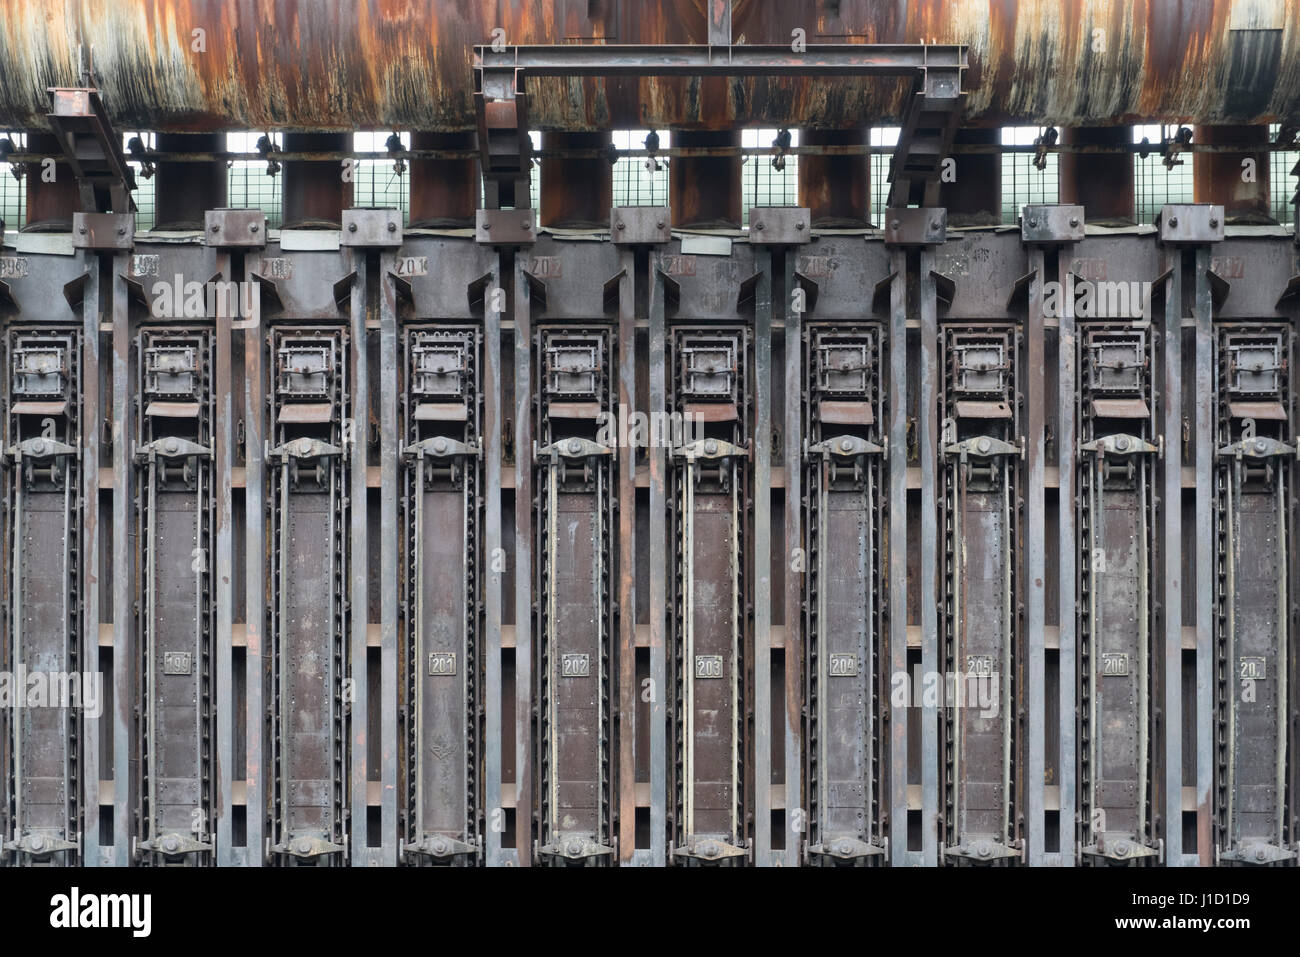 Cette batterie de four à coke appartient comme monument industriel au site du patrimoine mondial de l'UNESCO Zollverein à Essen, en Allemagne. Elle était en production jusqu'en 1996 et était la plus grande usine de cokéfaction du monde à cette époque. Vous avez besoin de 10,500 t de charbon pour produire les 8000 t de coke chaque jour. Le gaz du four à coke a été utilisé pour chauffer le four lui-même et pour chauffer la ville d'Essen. D'autres parties du gaz ont été utilisées dans l'industrie chimique. L'usine a commencé dans les années 1957-1961 avec 192 fours à coke. Plus tard, le nombre est passé à 304. Vous voyez ici les fours avec la gamme de numéros de 198 à 207. Banque D'Images